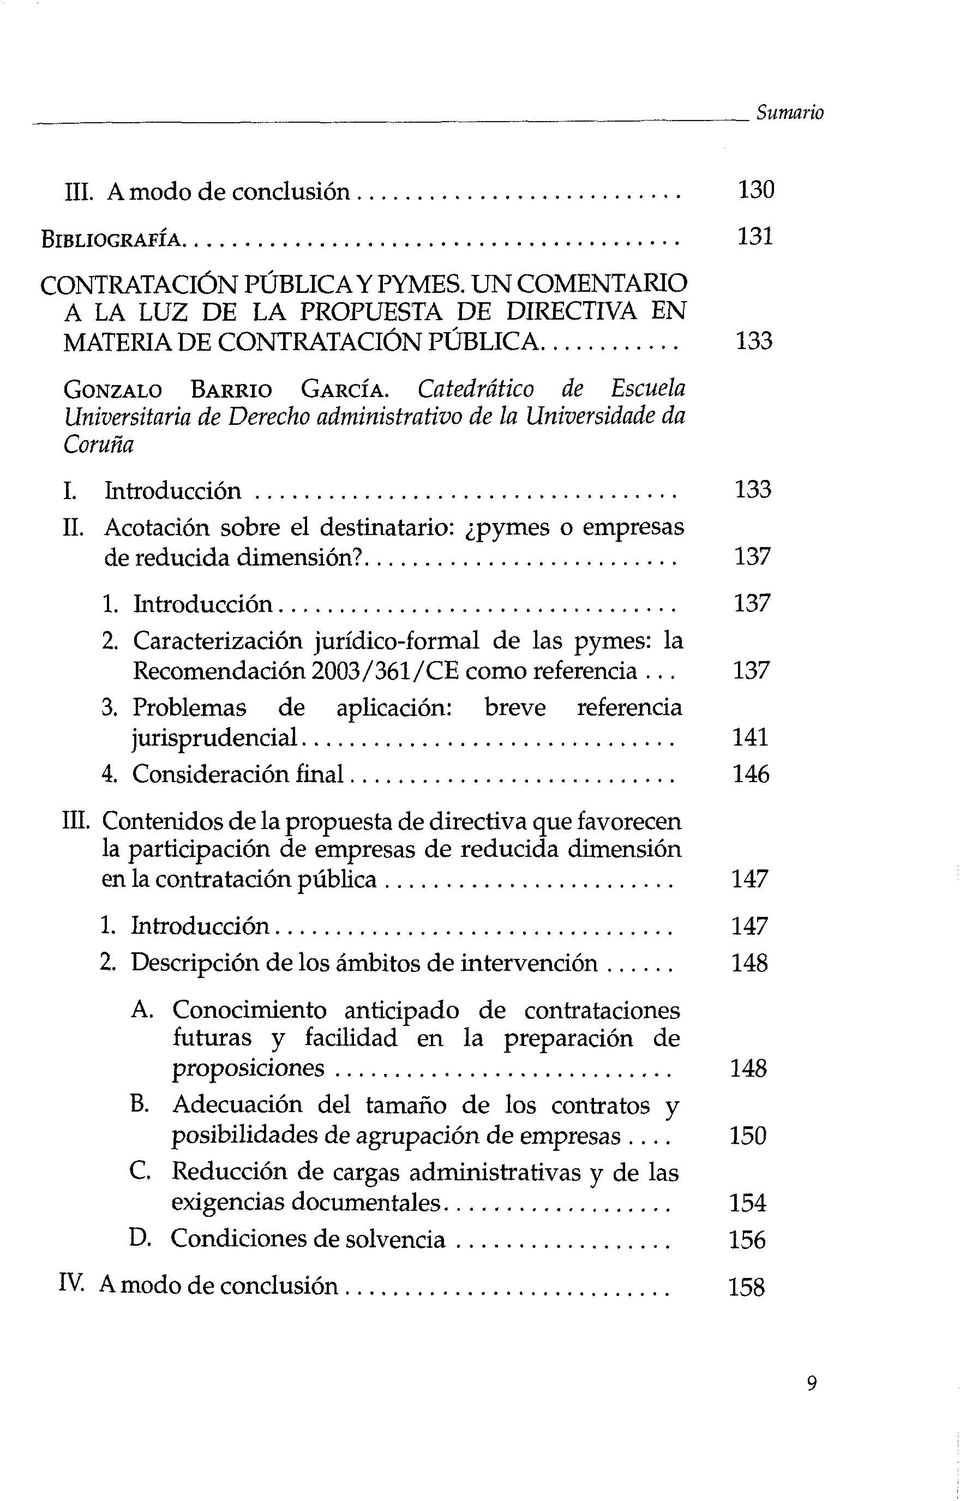 Introducciön 137 2. Caracterizaciön jurfdico-formal de las pymes: la Recomendaciön 2003/361/CE como referencia... 137 3. Problemas de aplicaciön: breve referencia jurisprudencial 141 4.